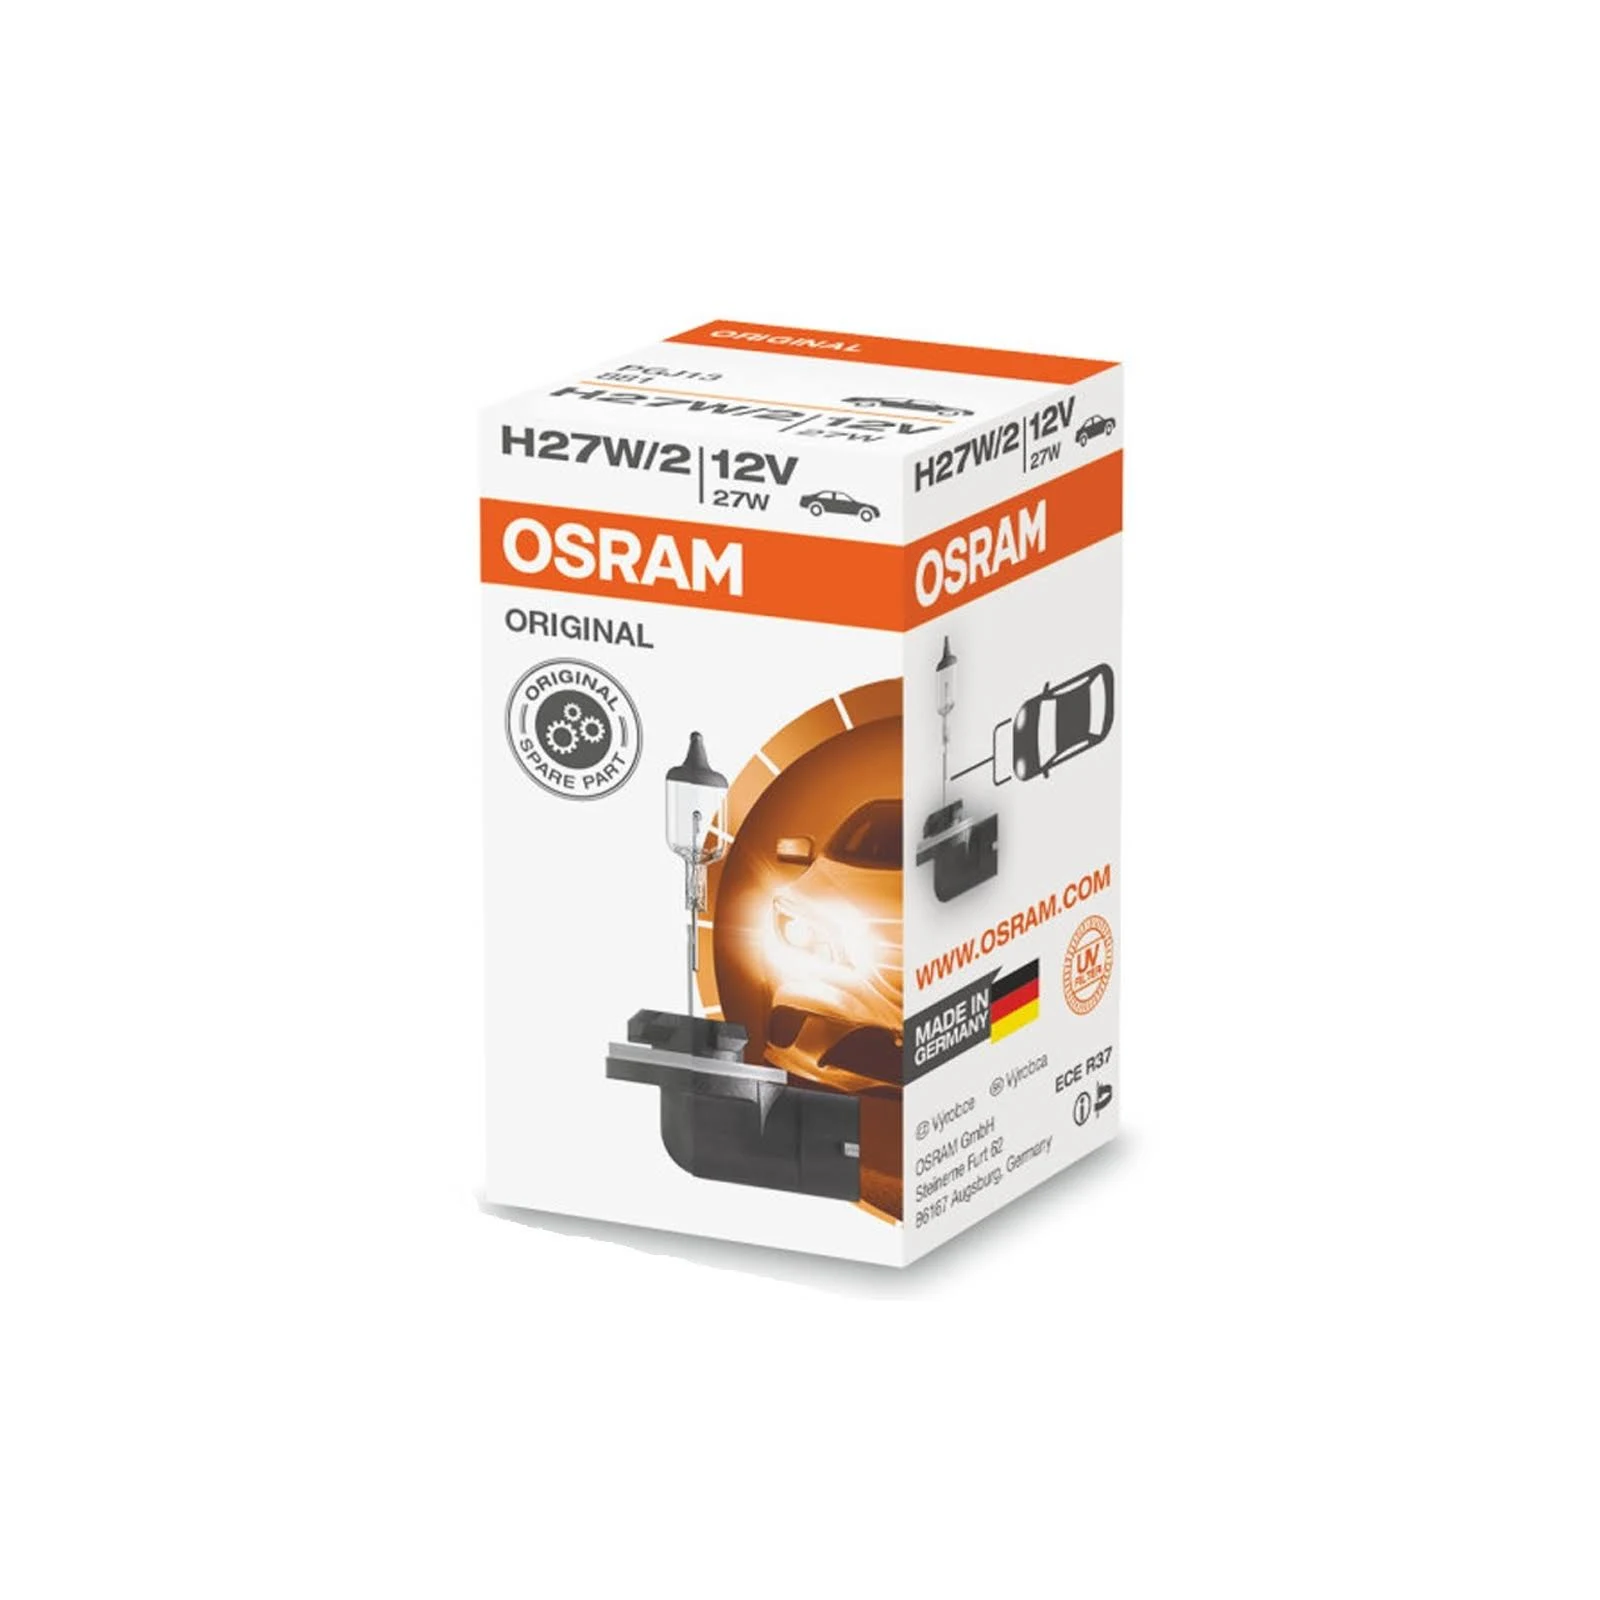 Лампа Osram Original Line H27/2W 12V 27W 881